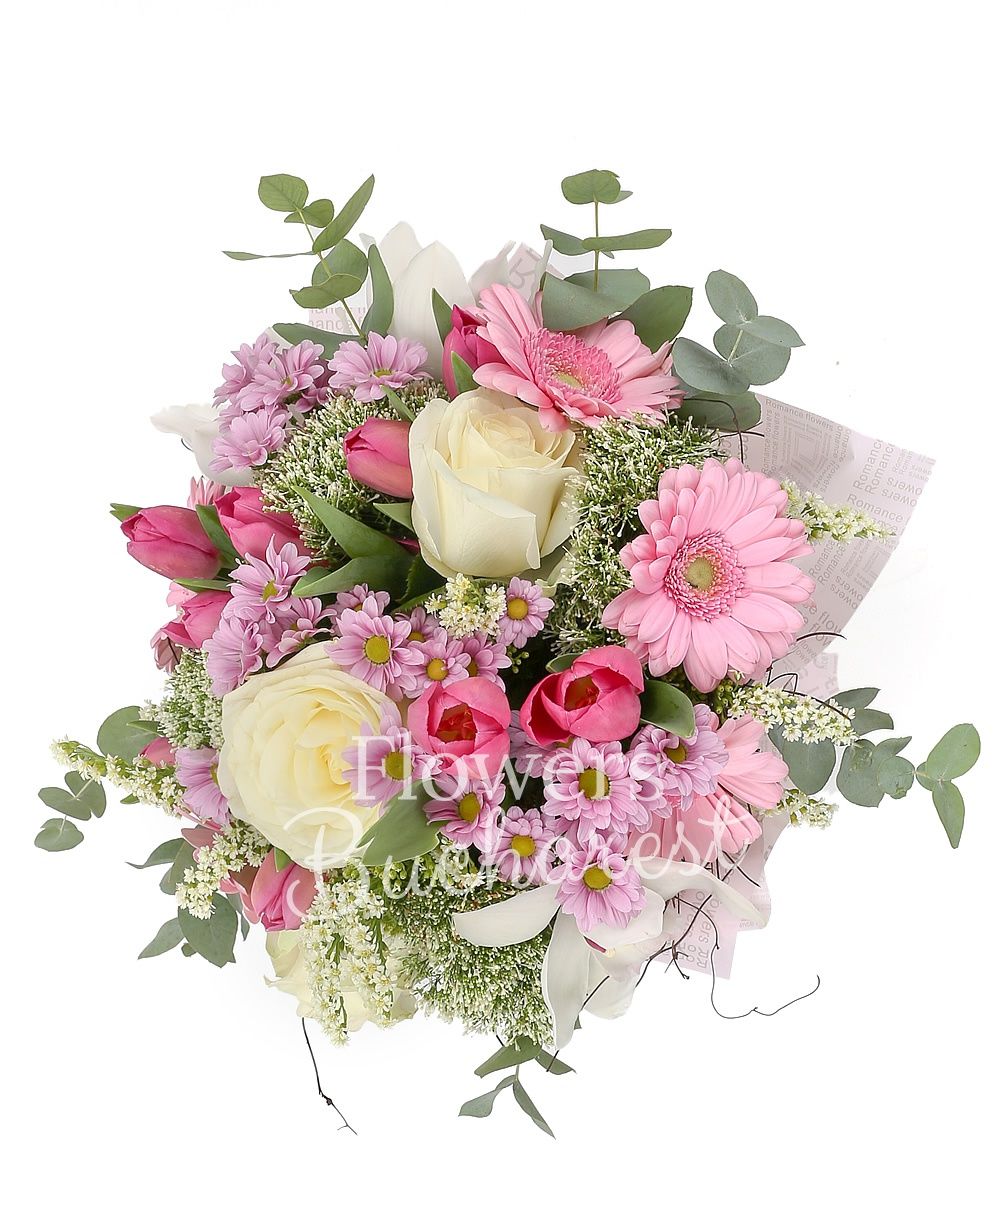 3 white roses, 5 pink gerberas, white cymbidium, 10 pink tulips, 4 white trachelium, 5 pink santini, 2 solidago, greenery